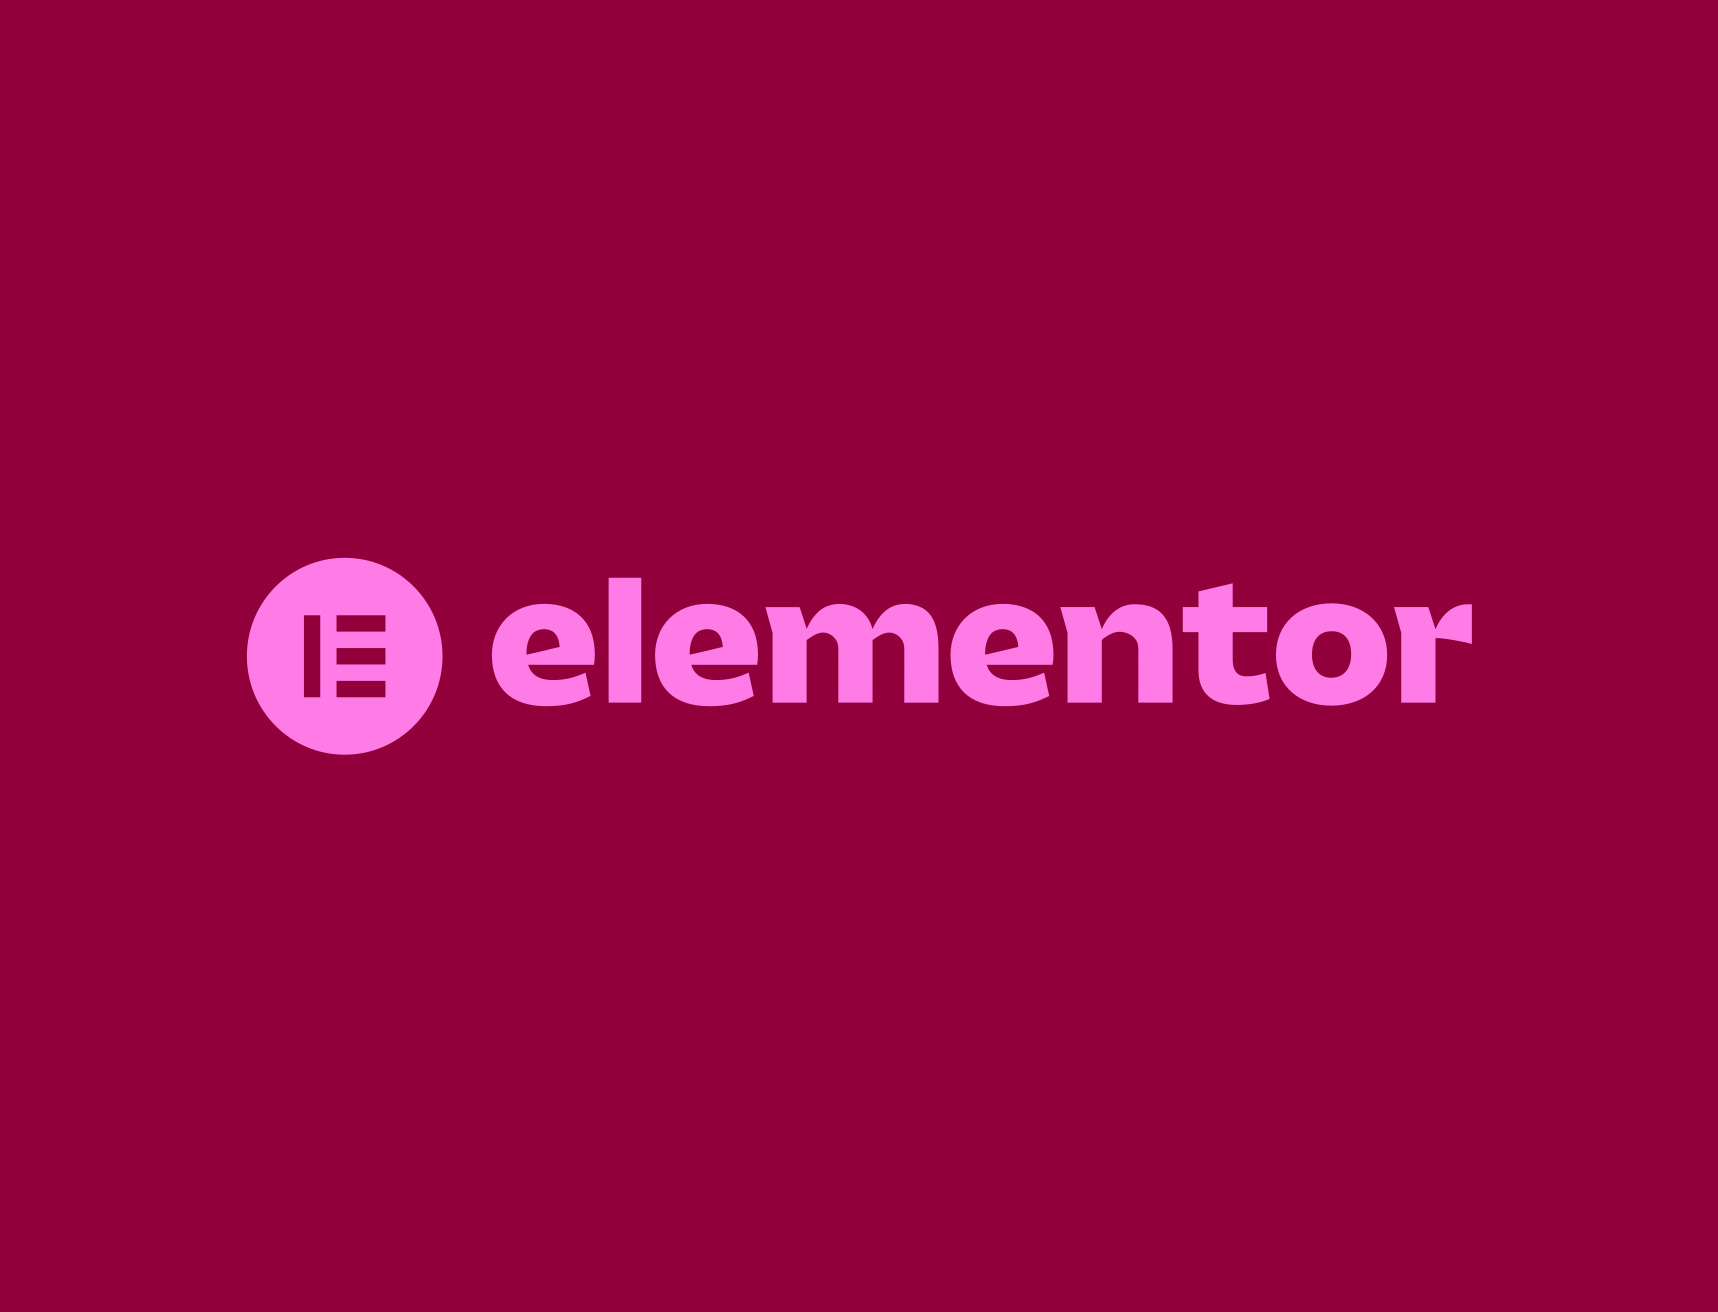 Elementor là một công cụ tuyệt vời cho những người không có kinh nghiệm lập trình nhưng vẫn muốn tạo ra những trang web đẹp mắt và chuyên nghiệp.